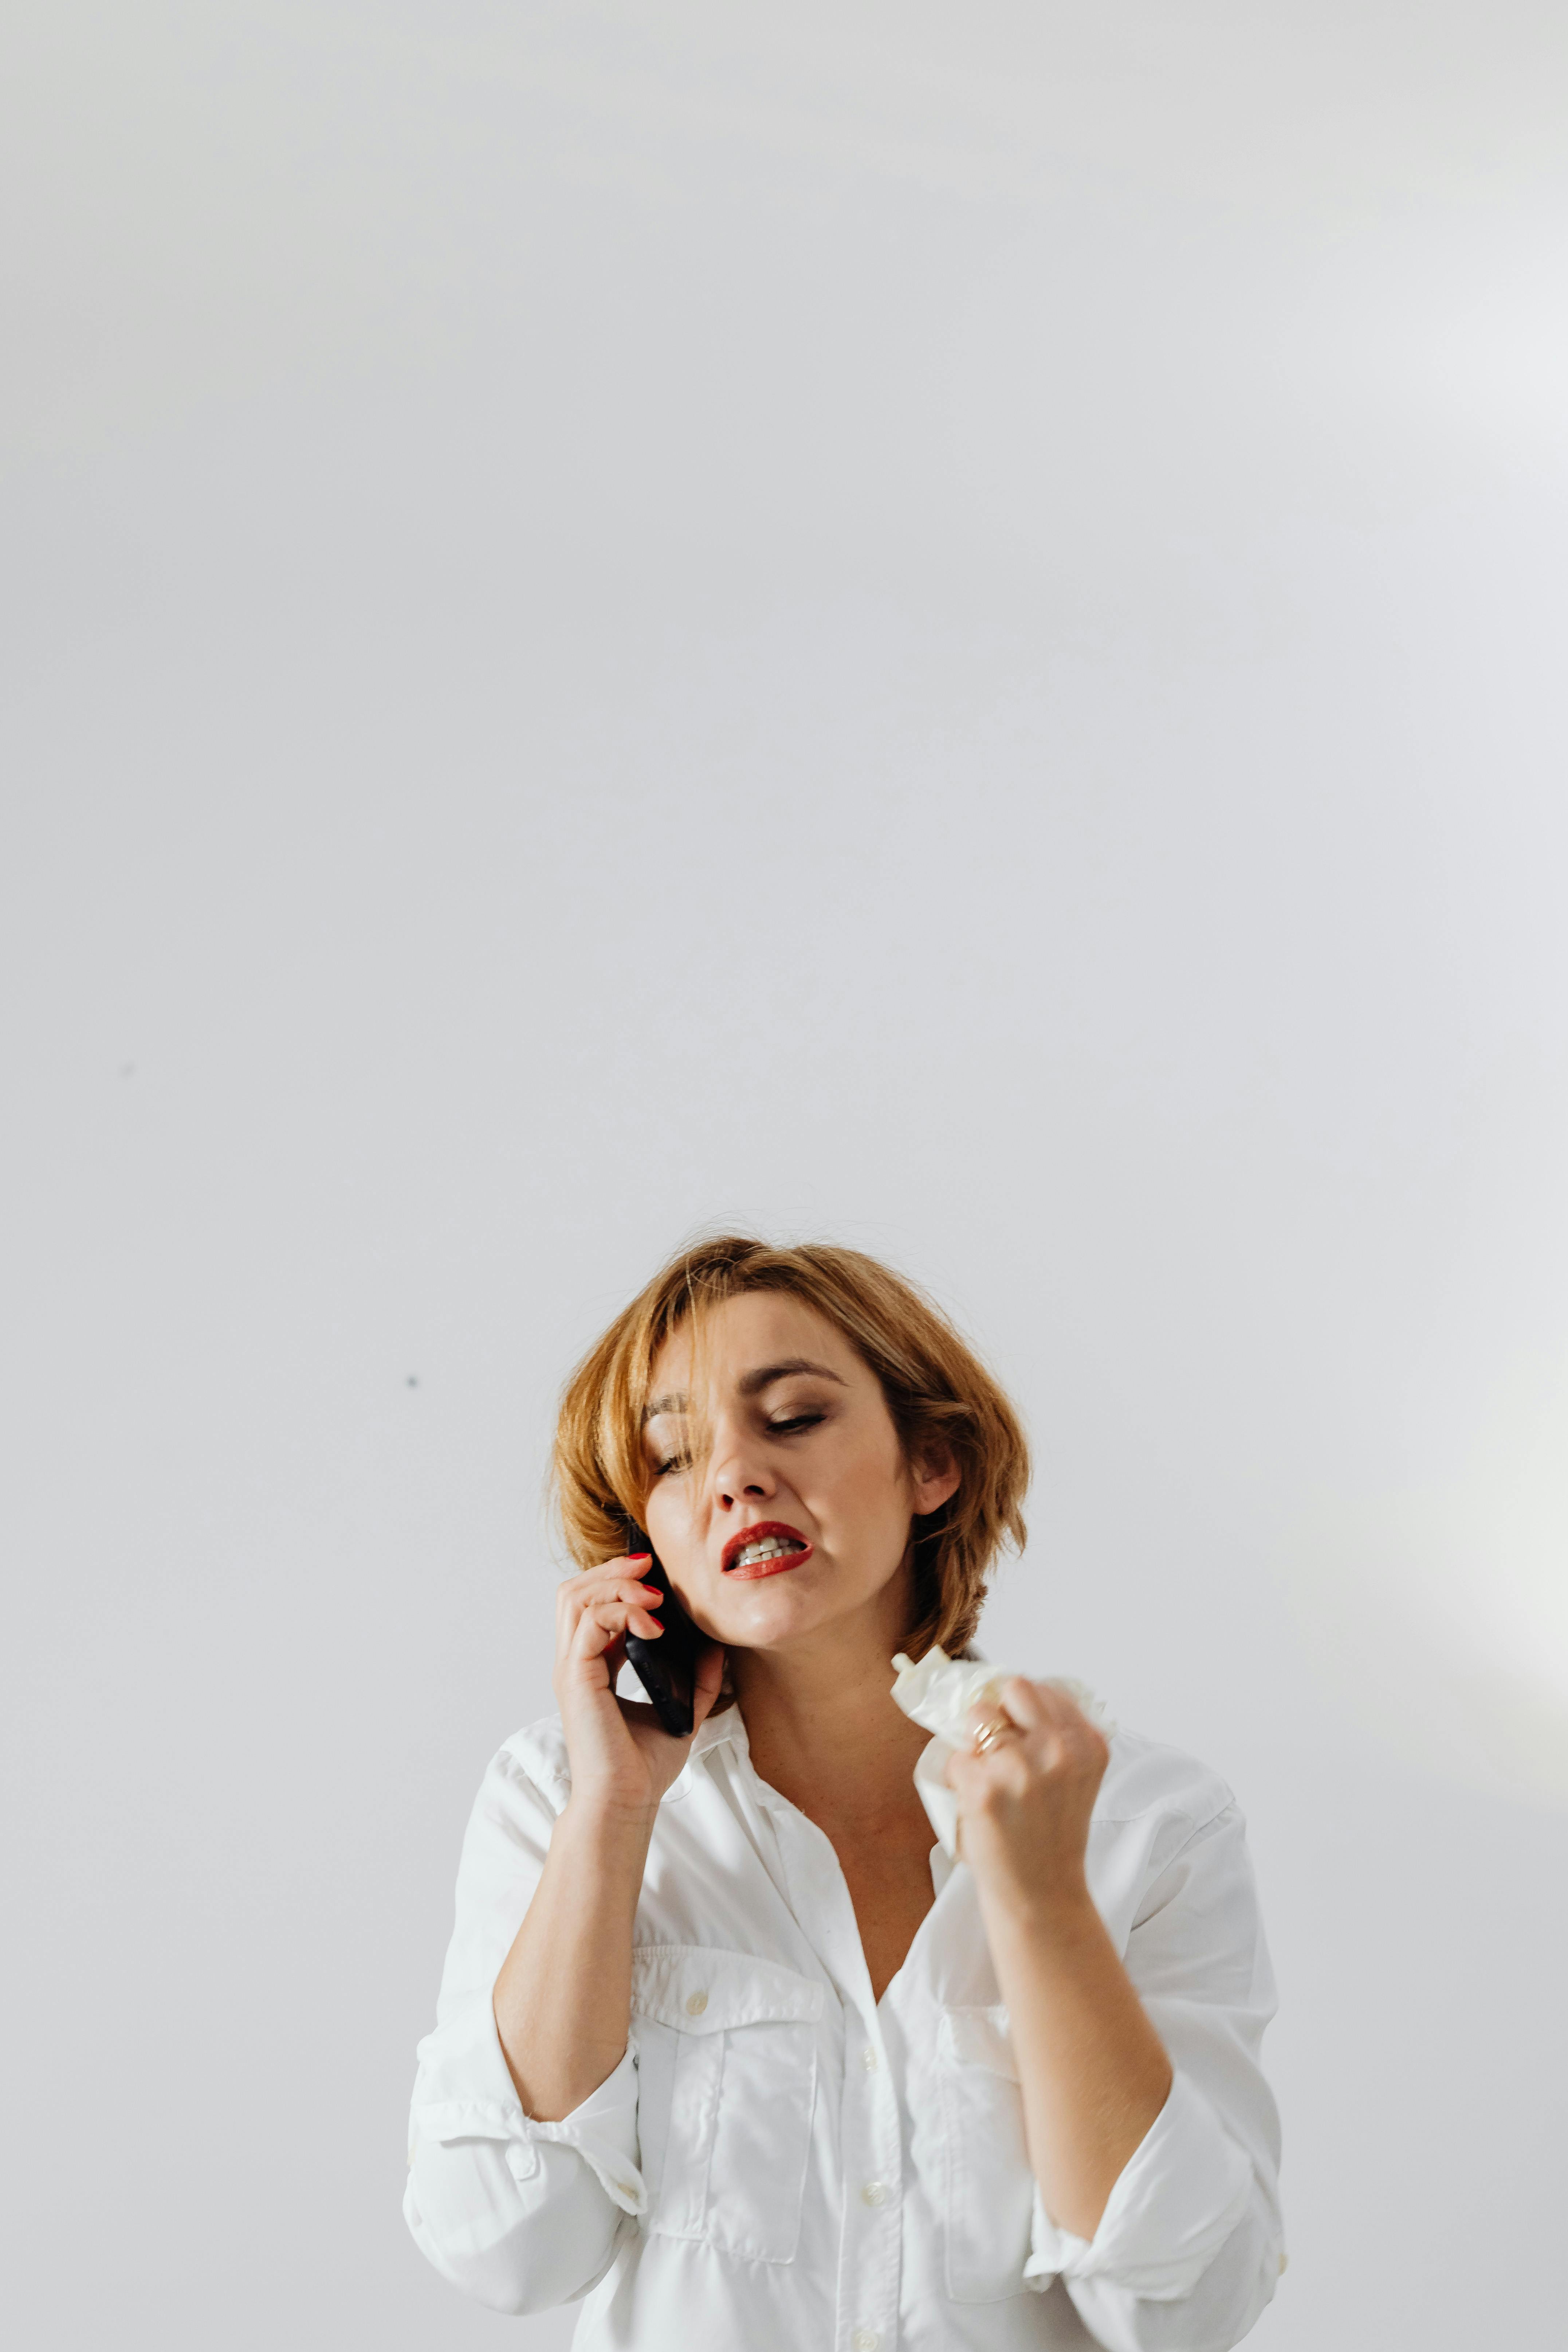 Une femme irritée parle au téléphone | Source : Pexels